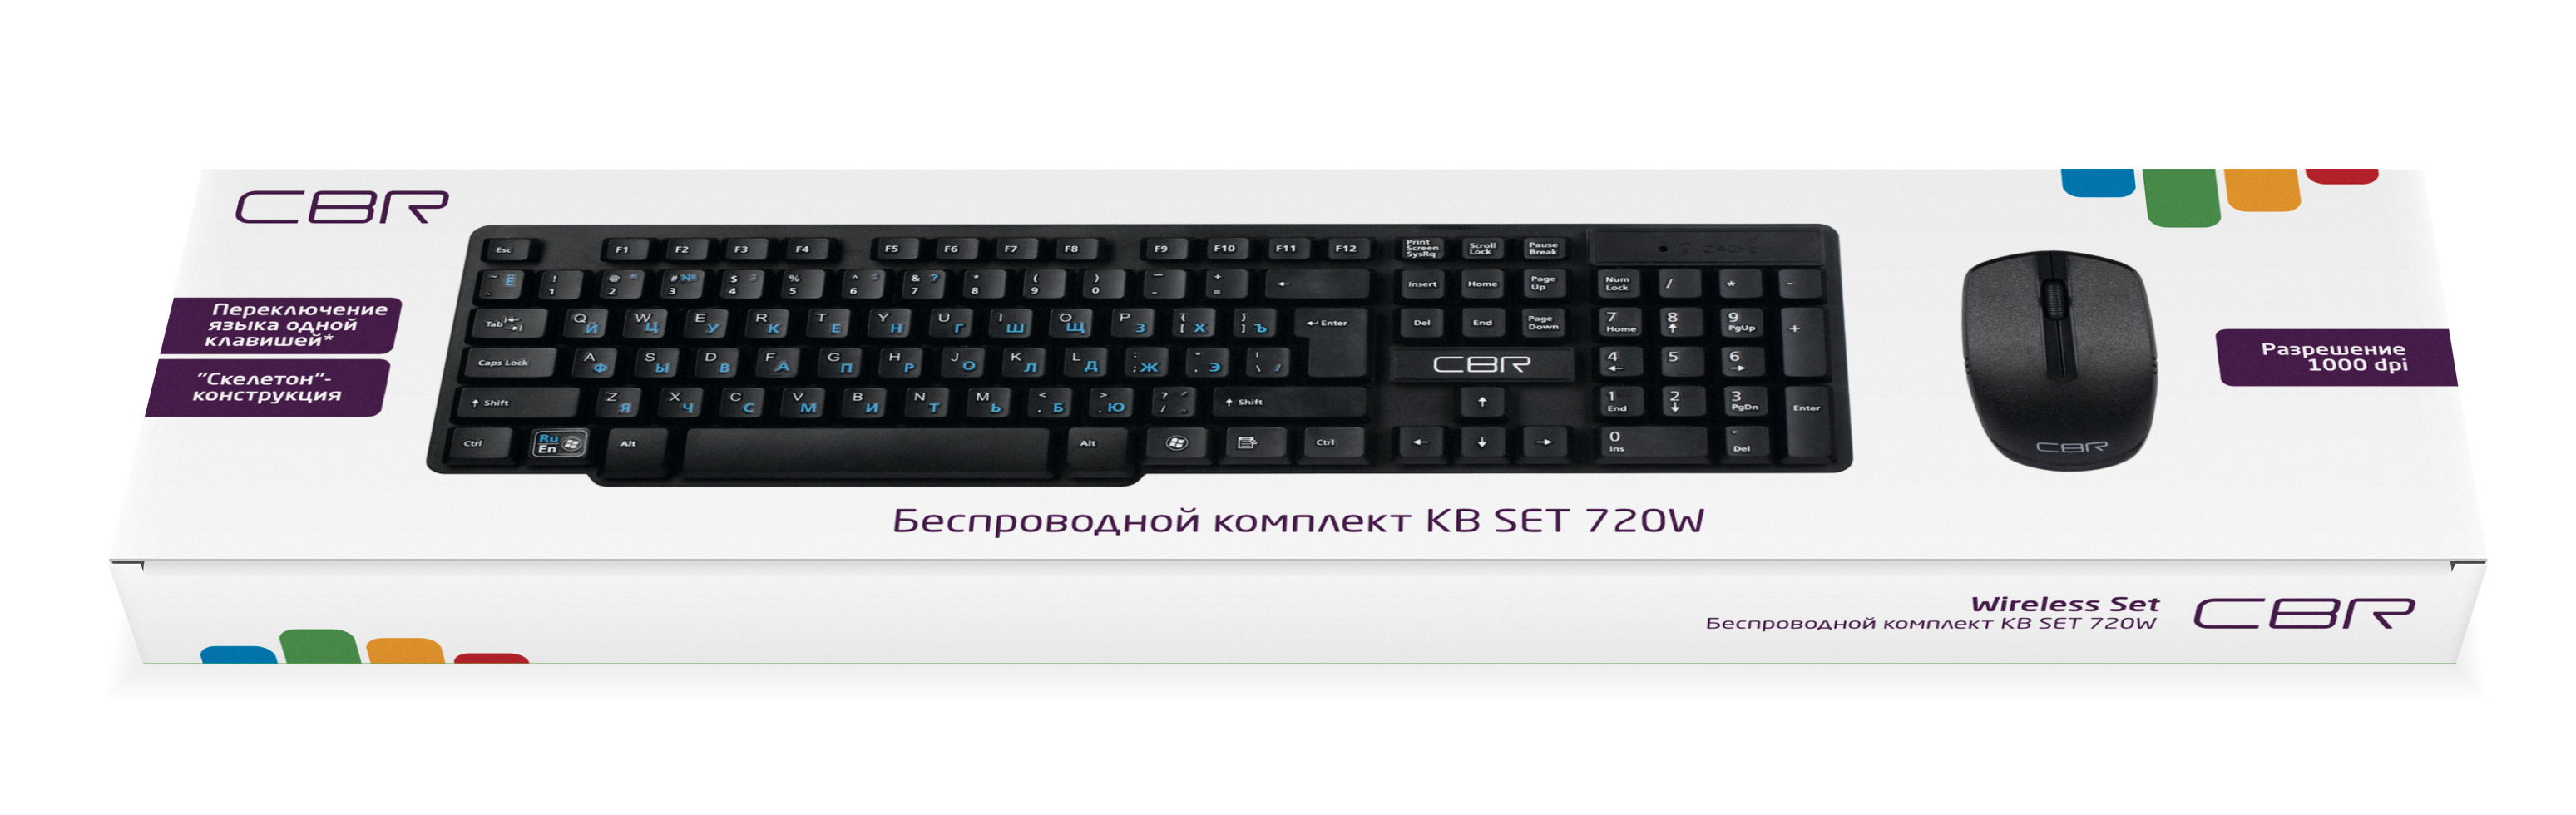 Комплект CBR KB SET 720W, клавиатура + мышь беспроводной, 2.4 ГГц, 104 клавиши, конструкц "скелетон